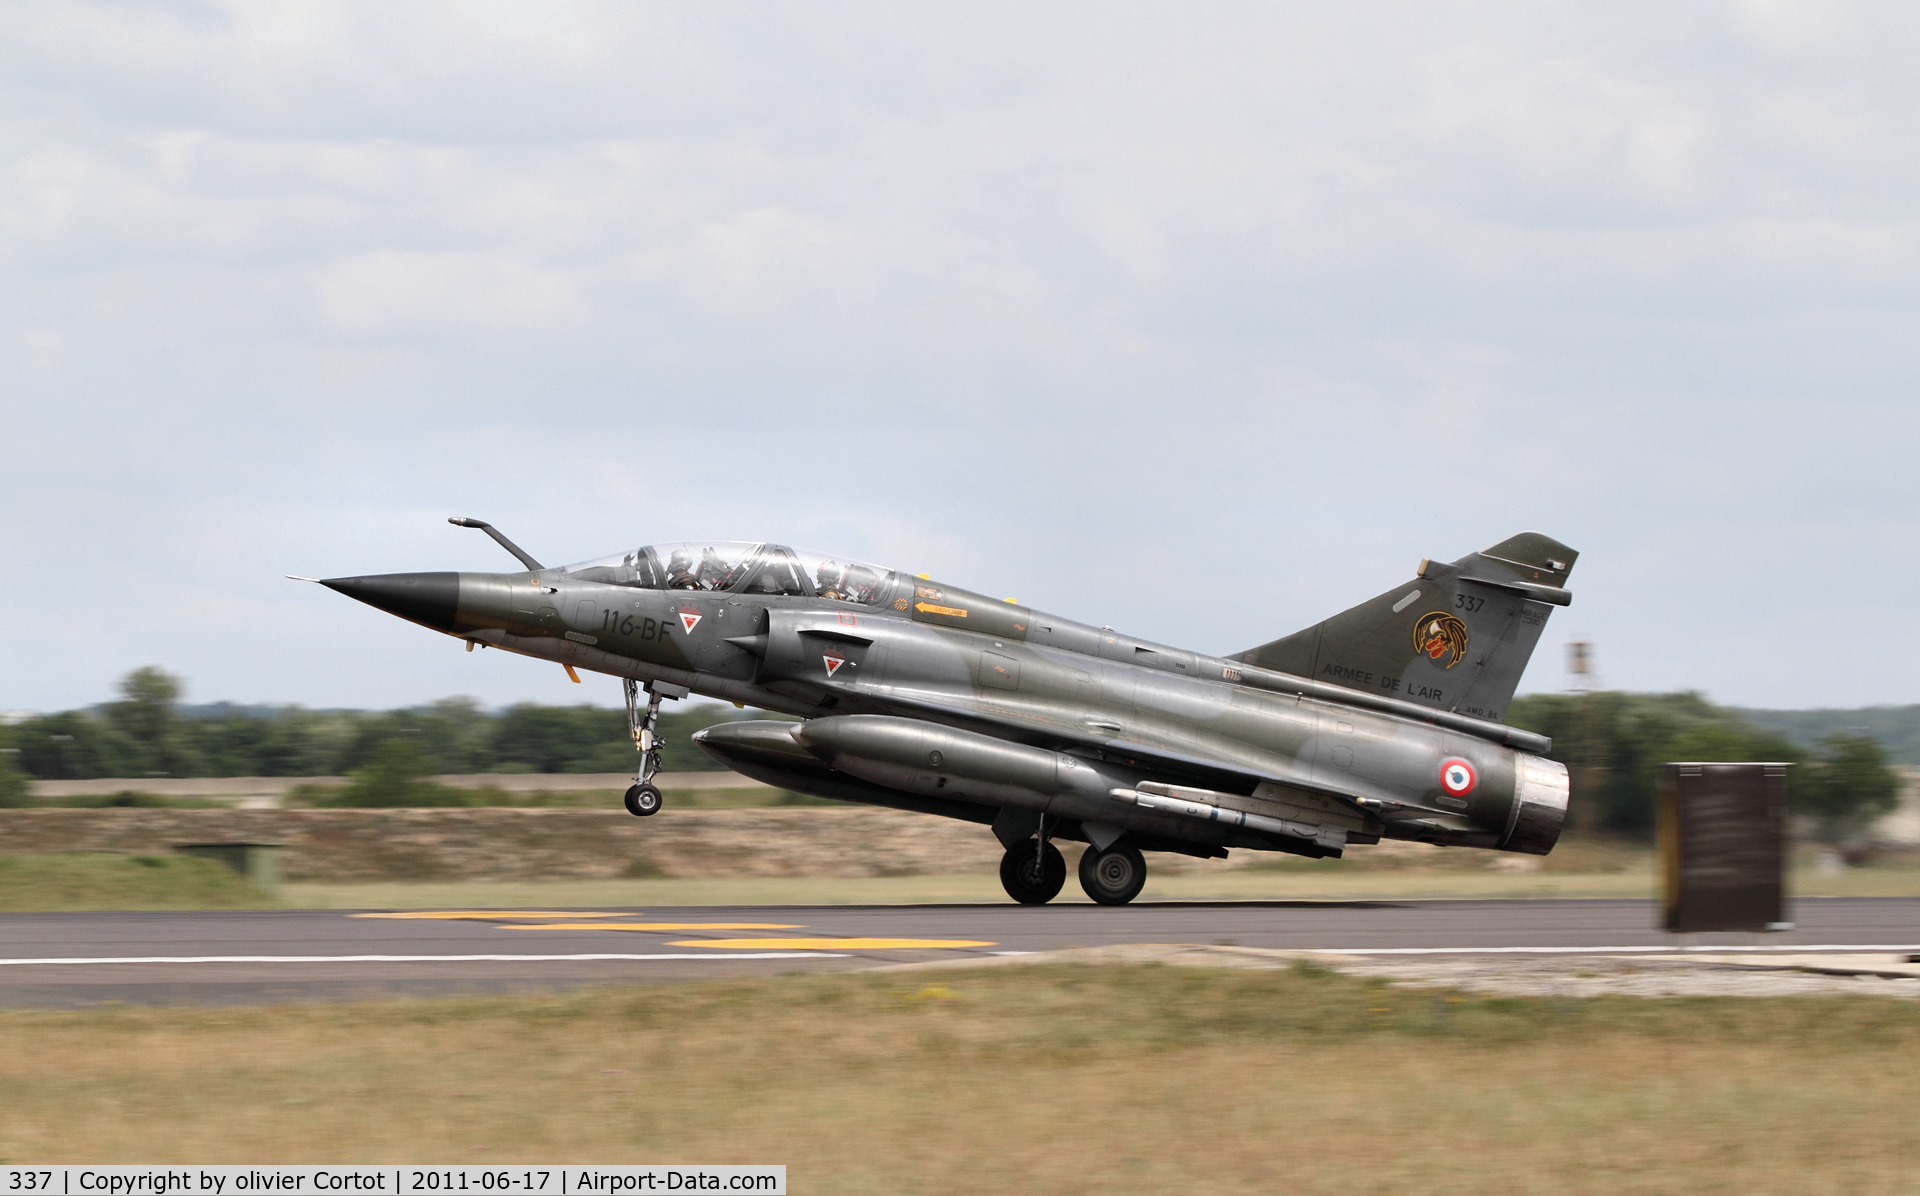 337, Dassault Mirage 2000N C/N 337, landing at Saint dizier